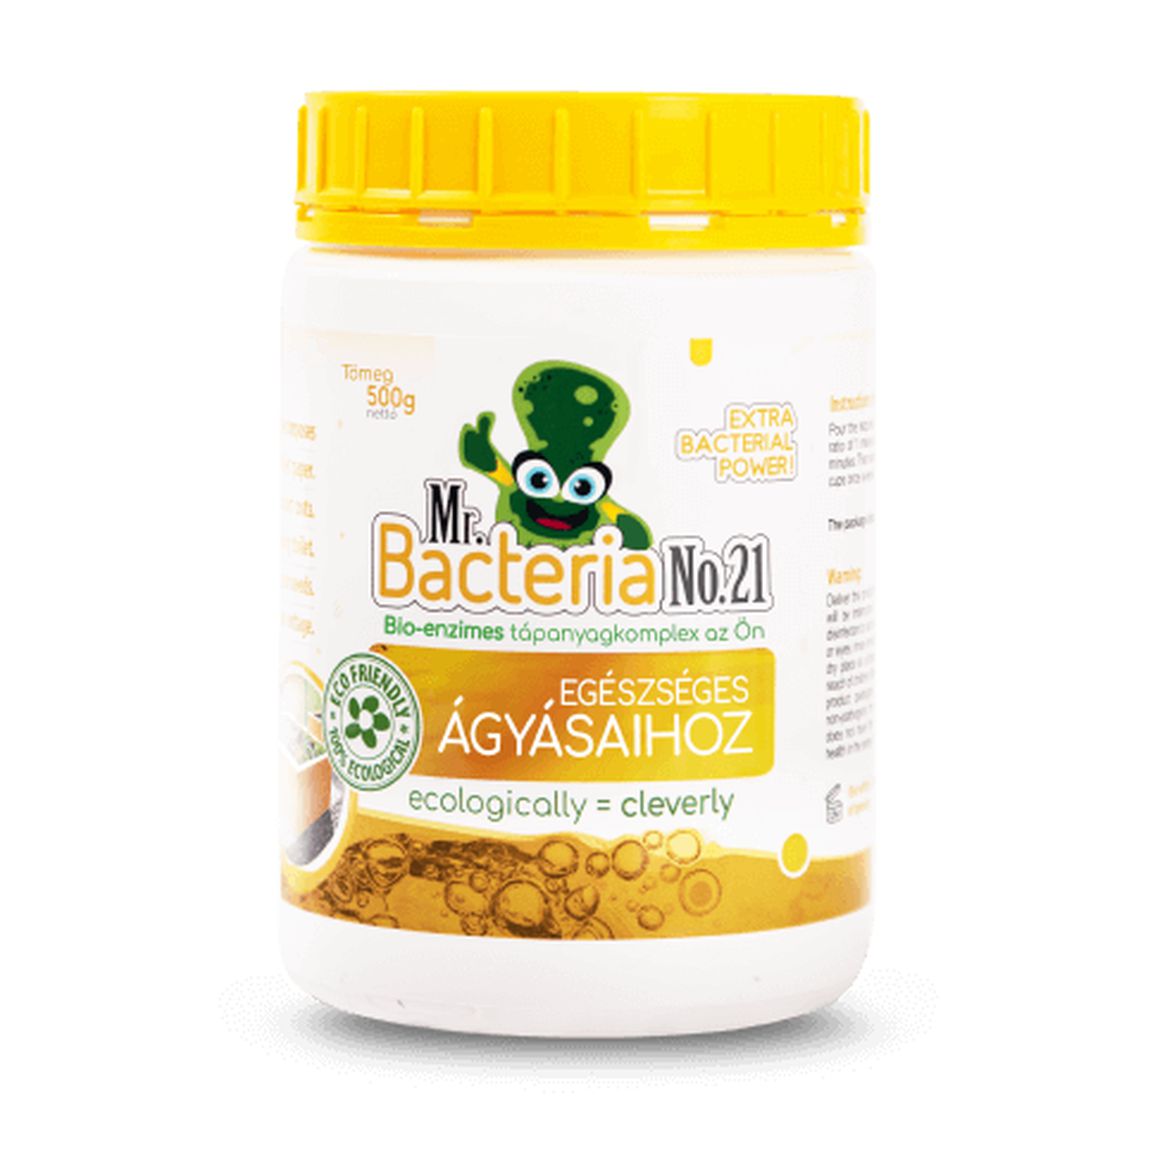 Mr. Bacteria No.21 Bio-enzimes tápanyagkomplex az Ön